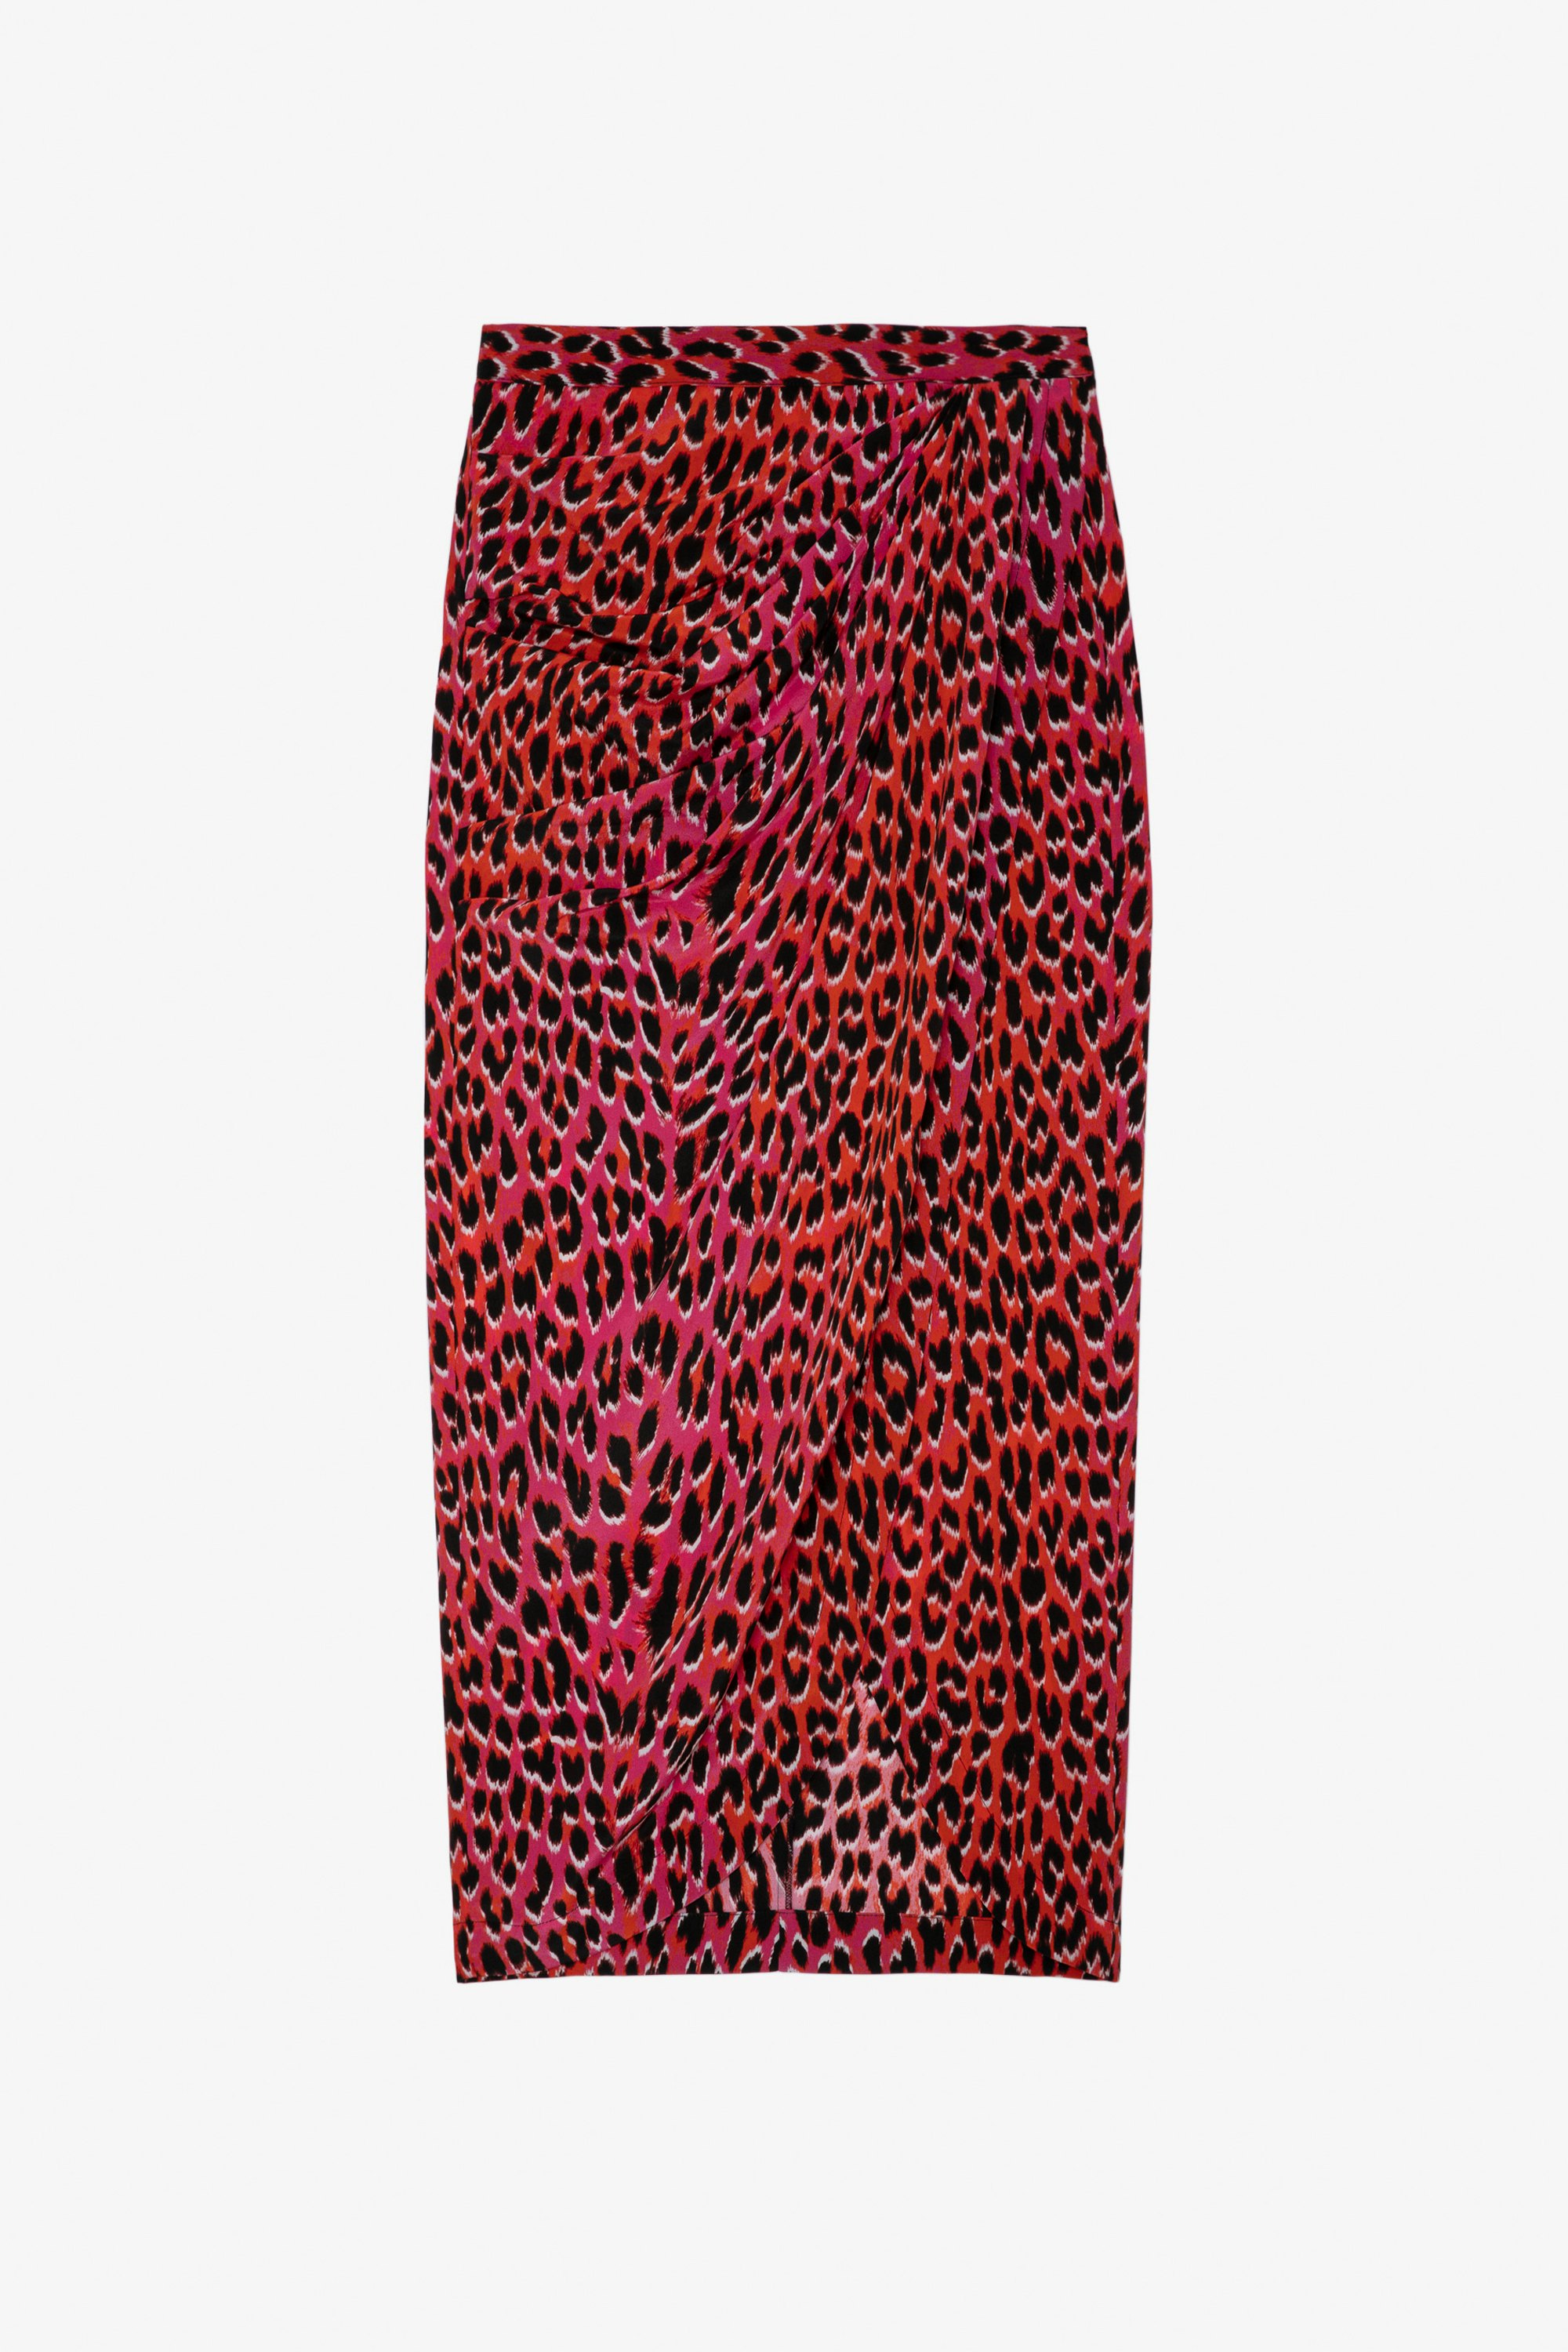 Jupe Jamelia Léopard Soie - Jupe longue drapée en soie rose imprimé léopard.